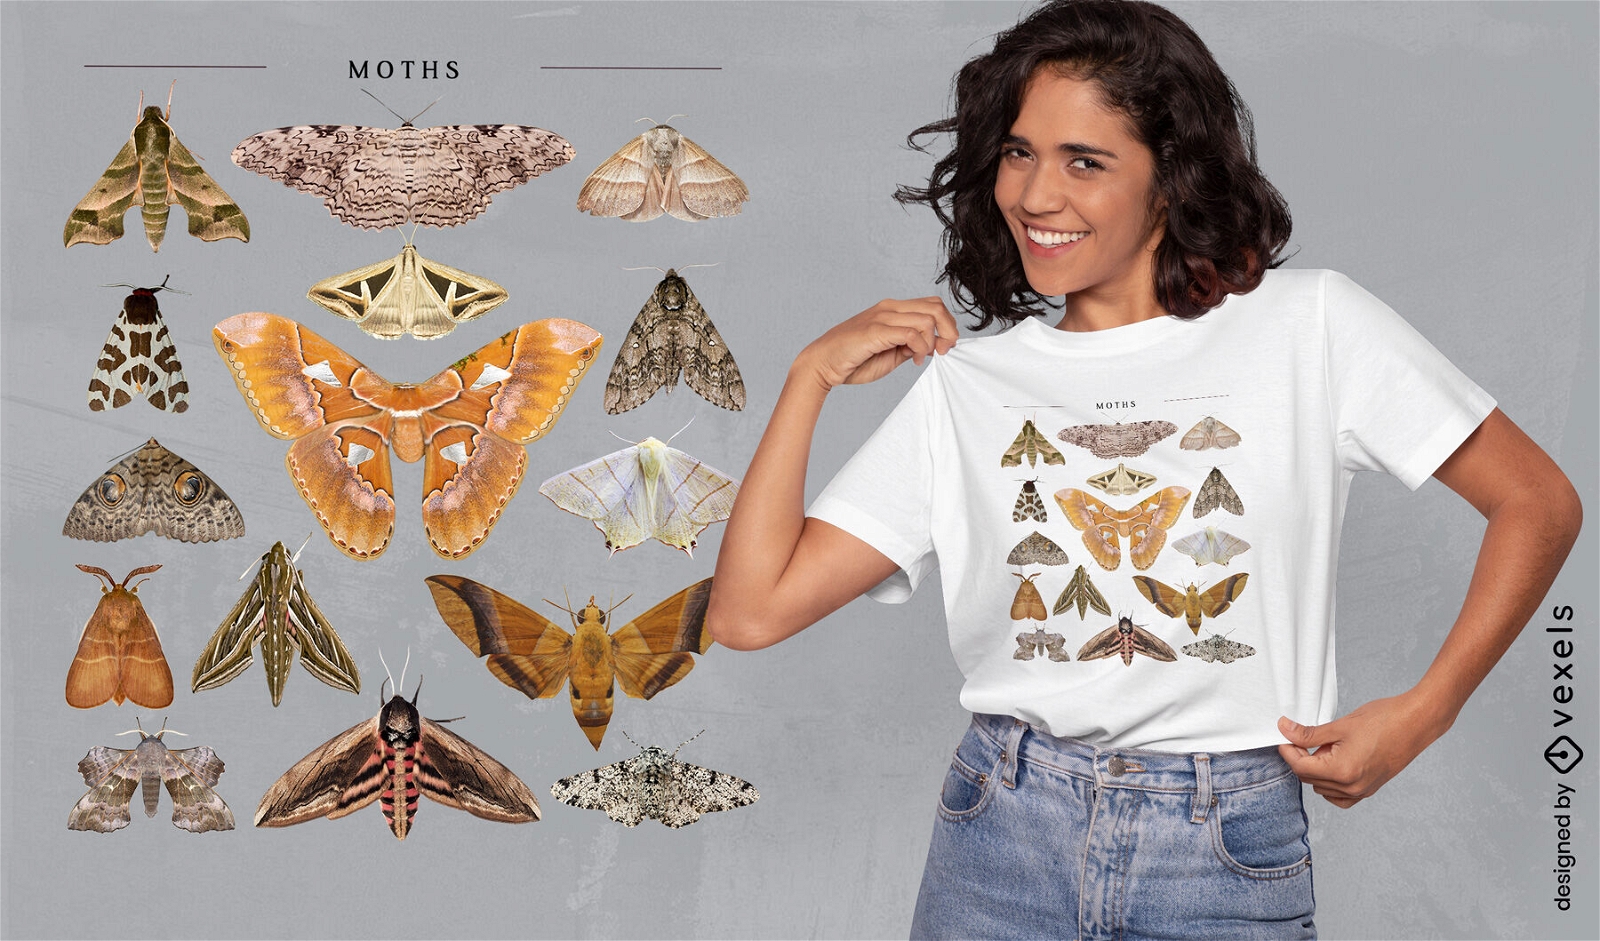 Dise?o de camiseta de cat?logo de mariposas y polillas.